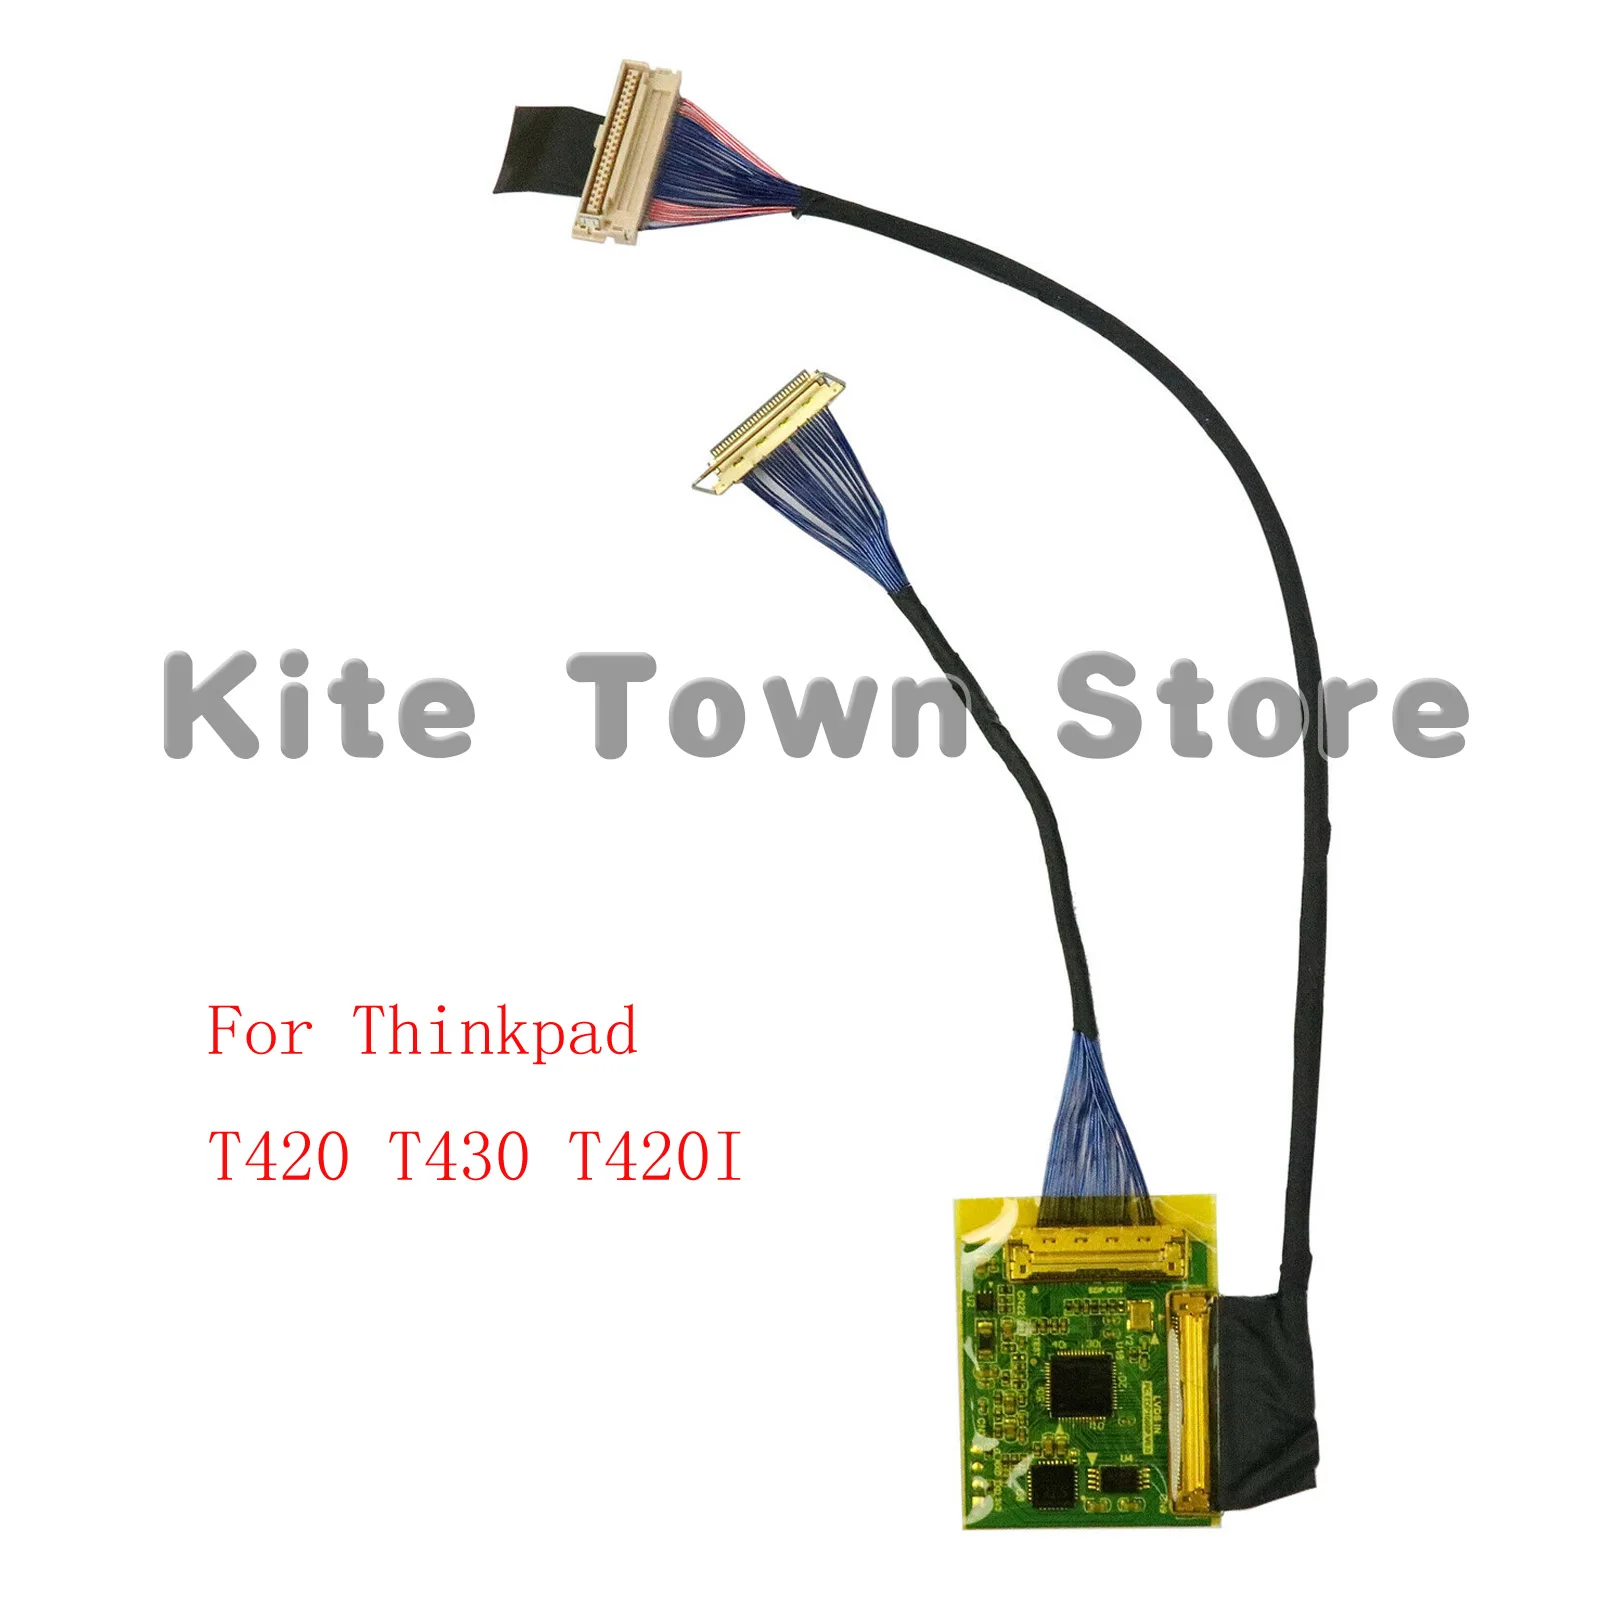 kit-de-atualizacao-de-controlador-lcd-para-thinkpad-novo-1920x1080-1080p-ips-fhd-t430-t420-t420i